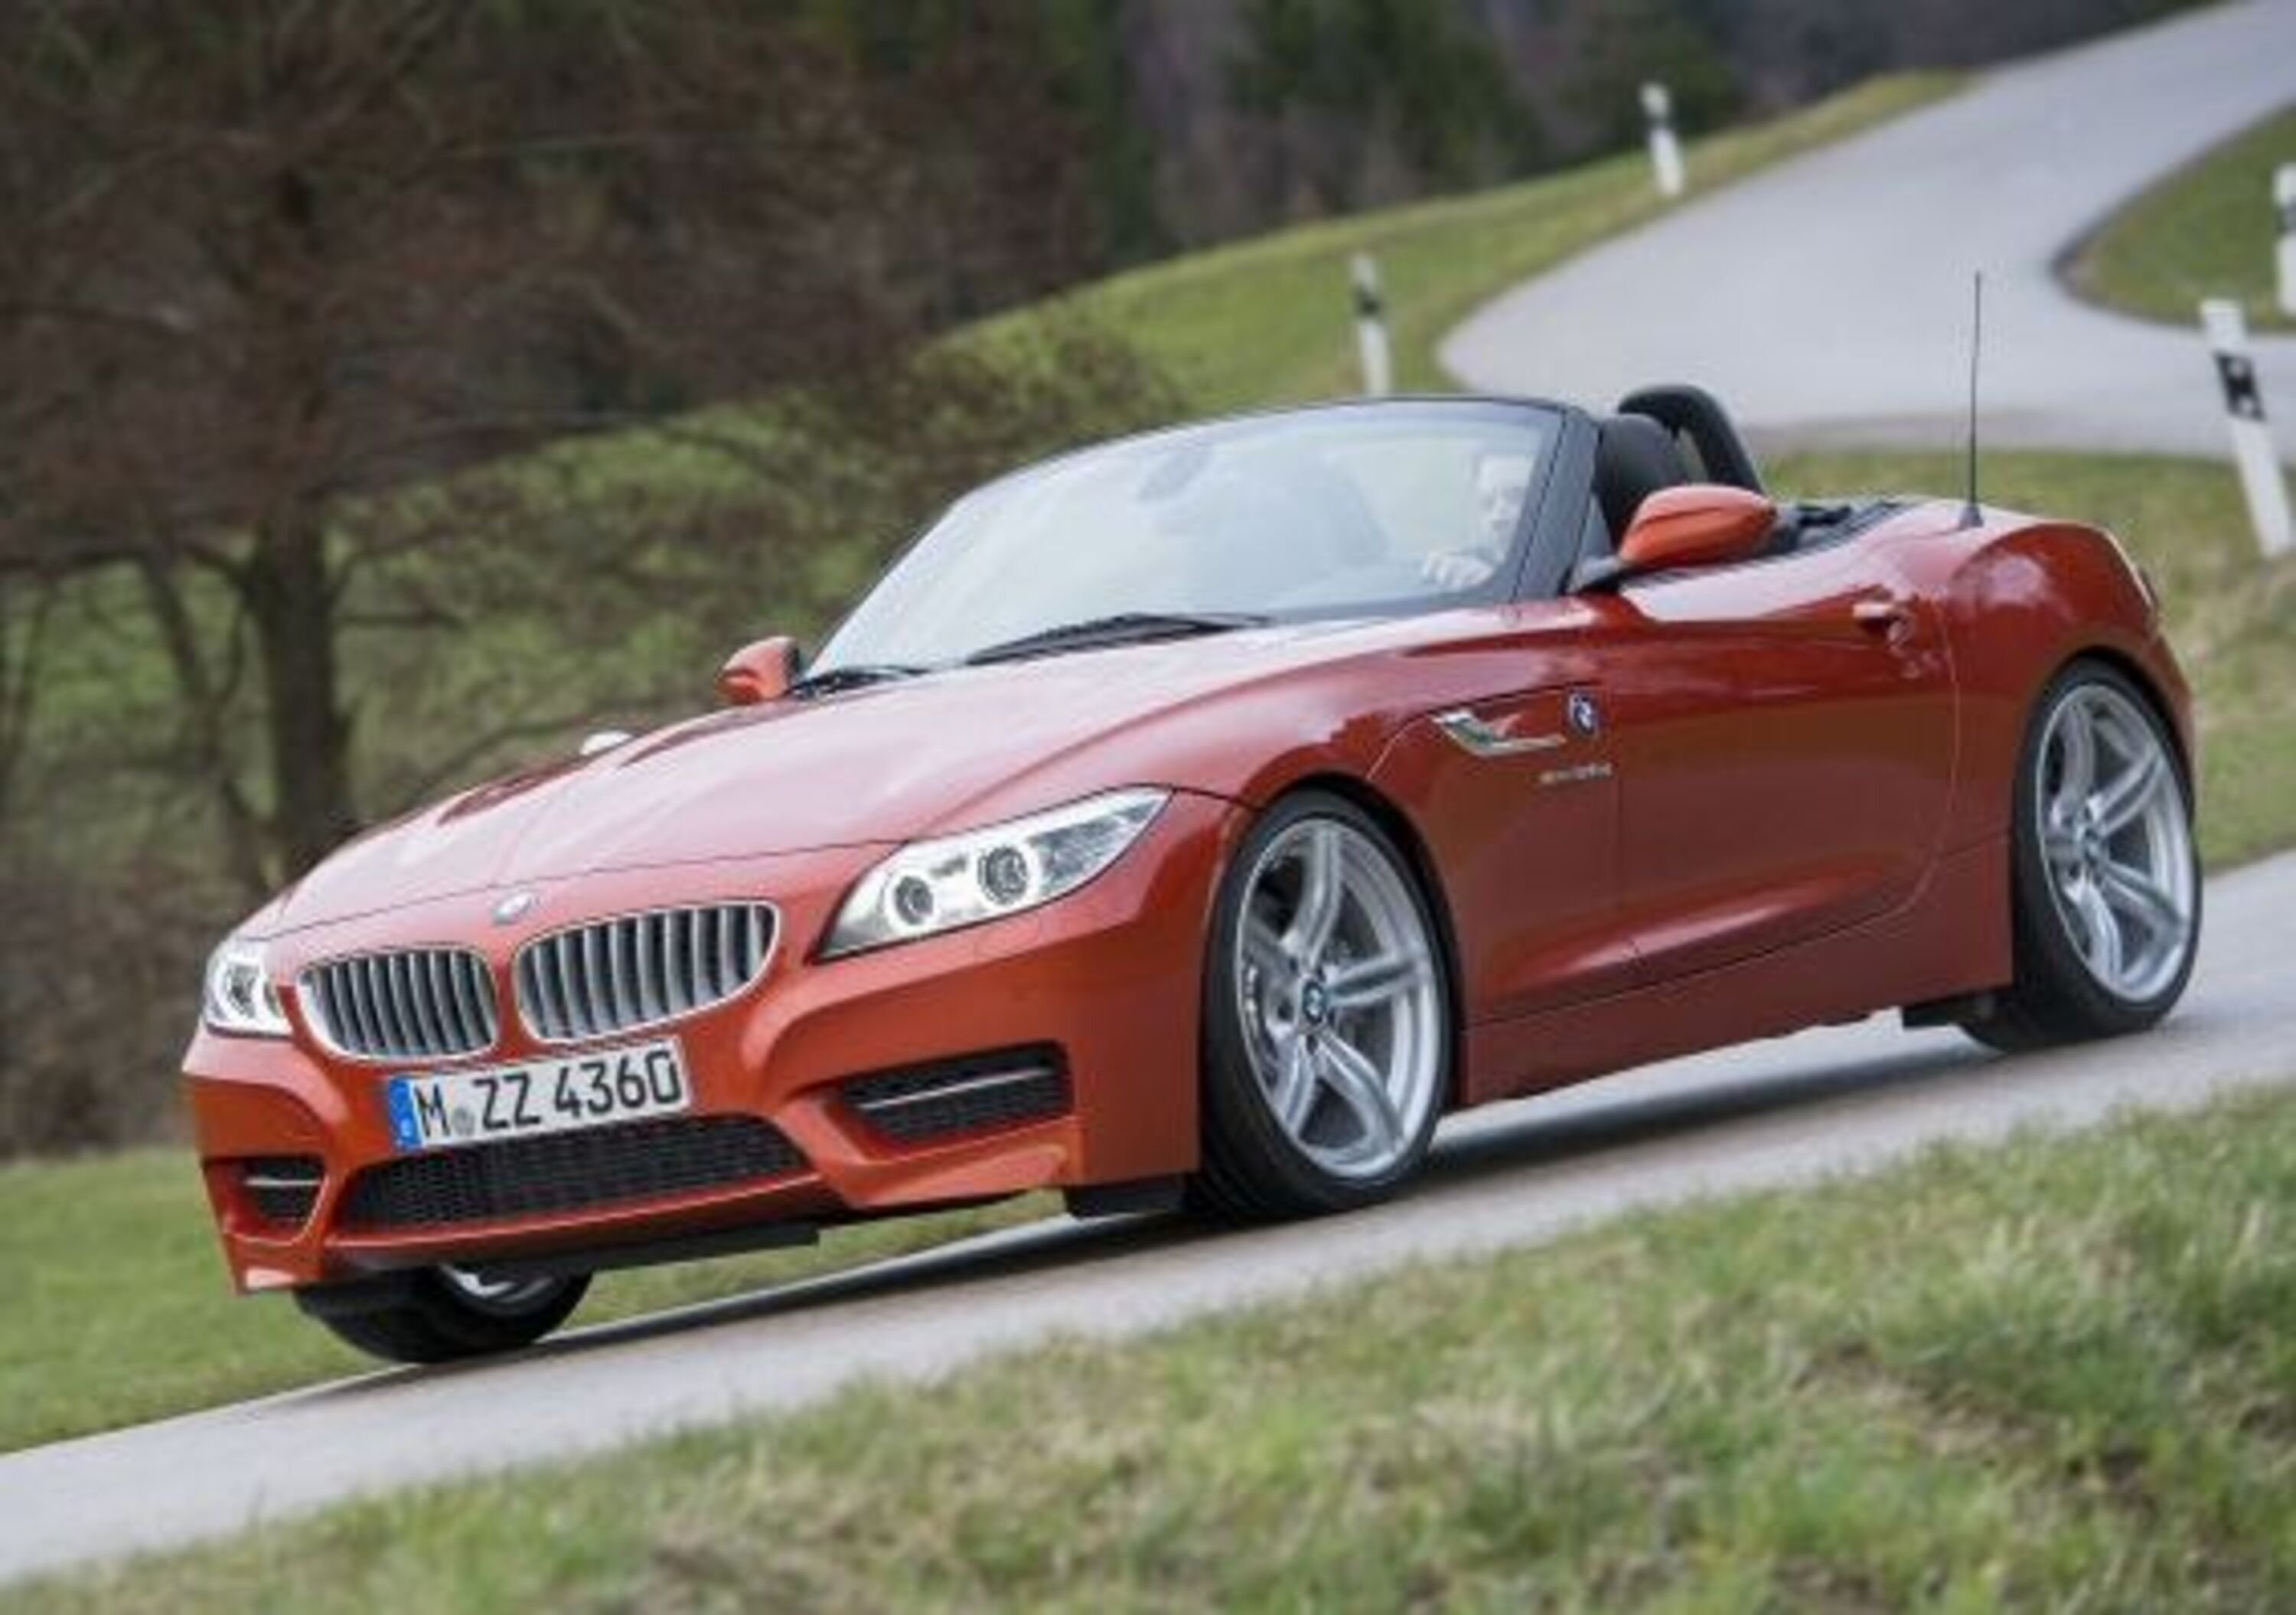 BMW Z4 va in pensione: arrivano le nuove Z5 e Toyota Supra?